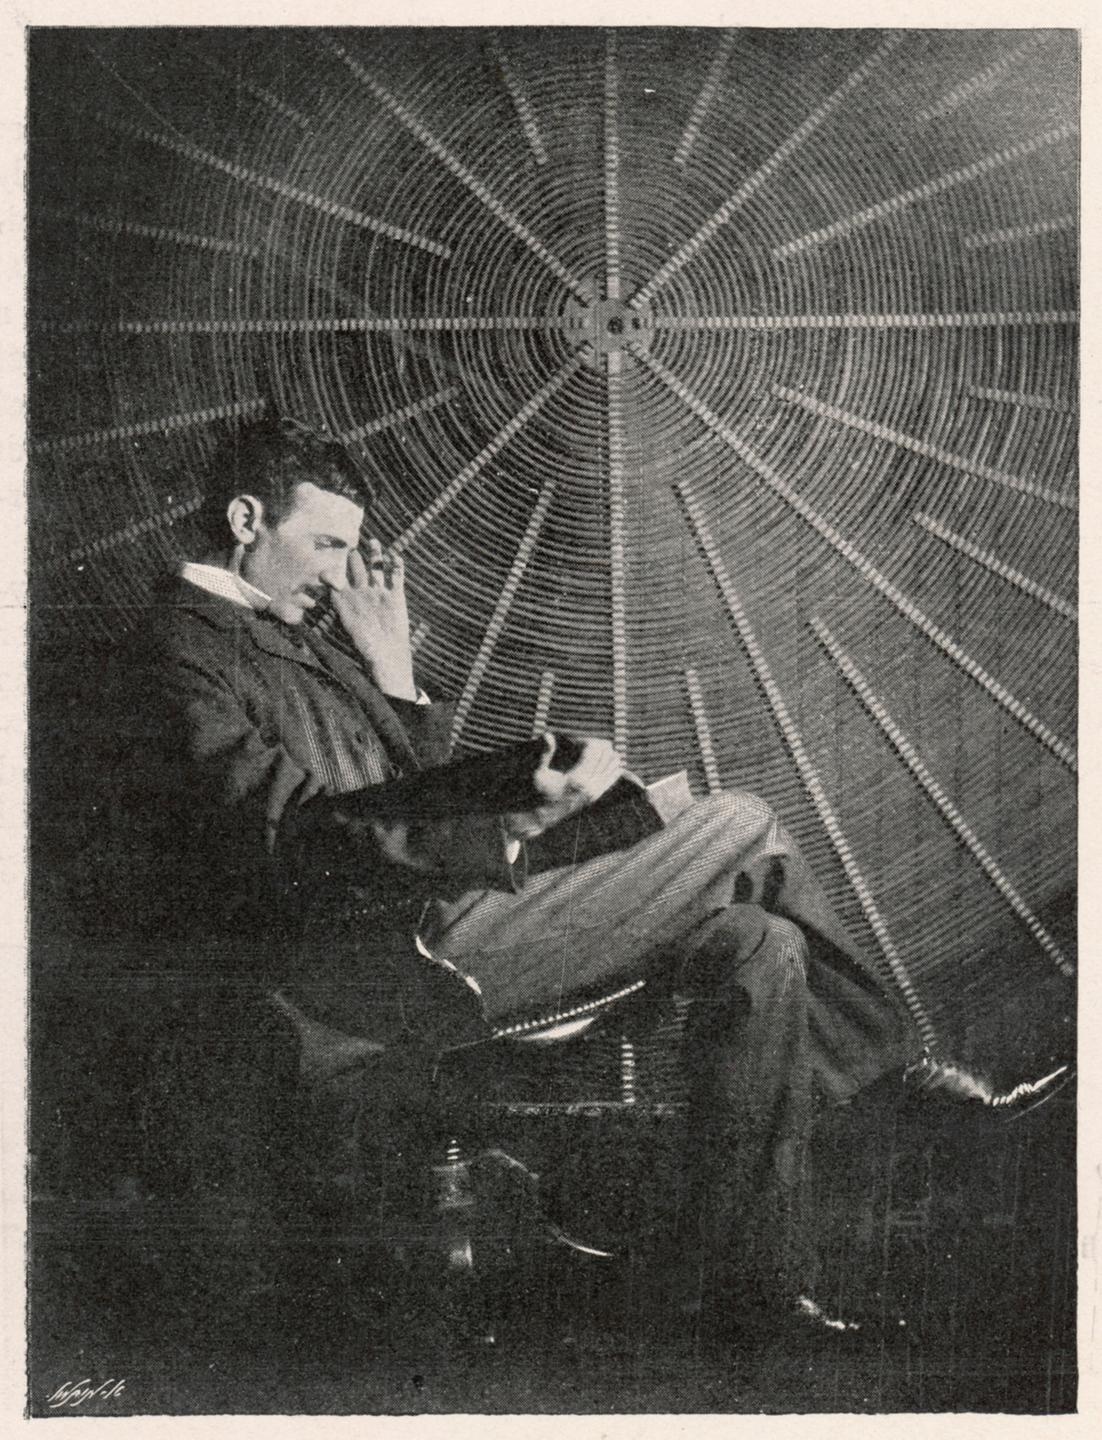 Der Erfinder Nikola Tesla (1856-1943) in seinem amerikanischen Labor (undatiert).